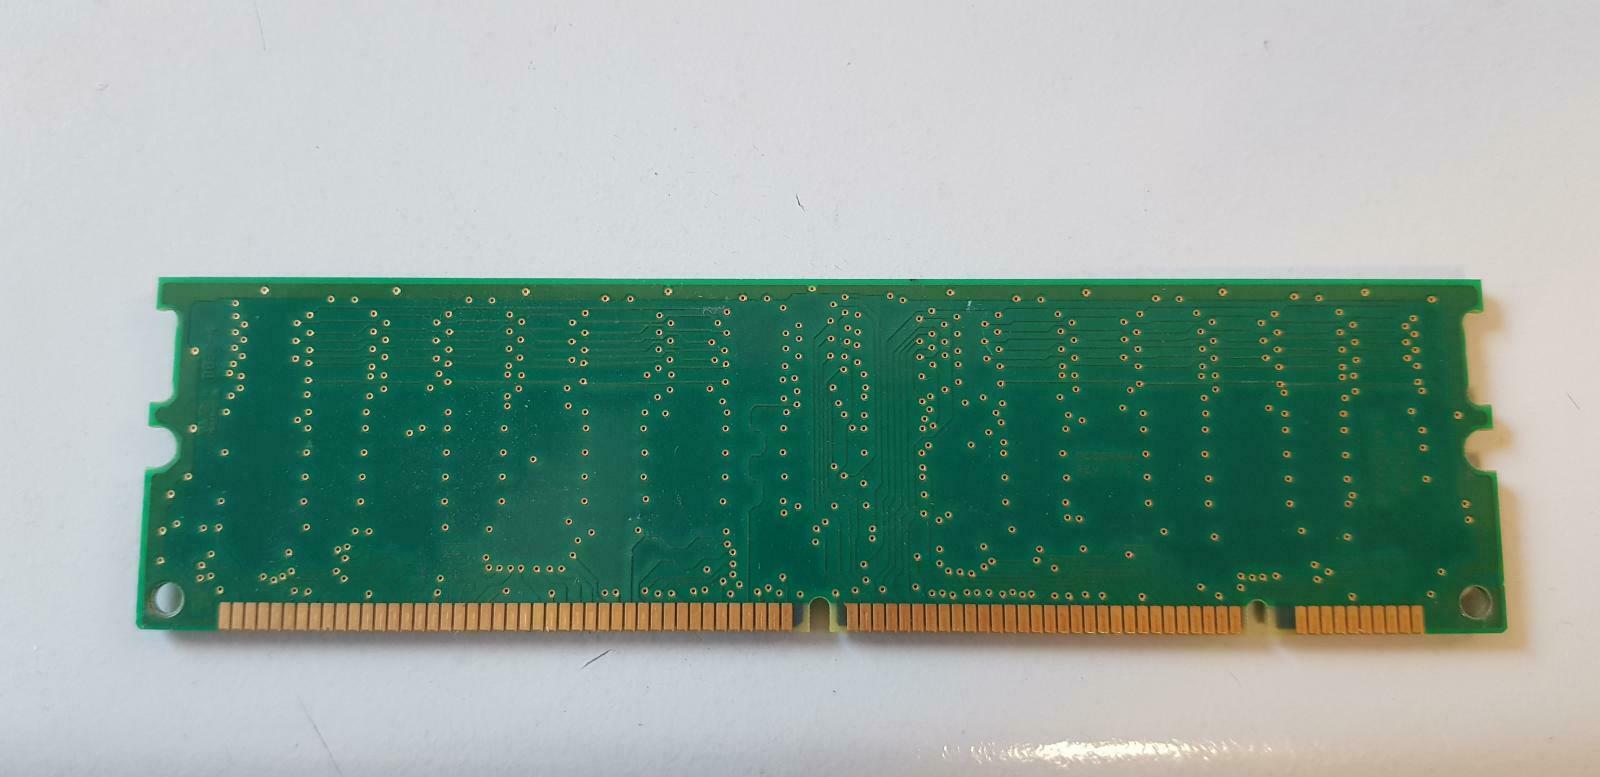 Hynix 64MB PC133 133MHz non-ECC Unbuffered CL3 168-Pin DIMM ( HYM7V63801BTFG-75 ) REF